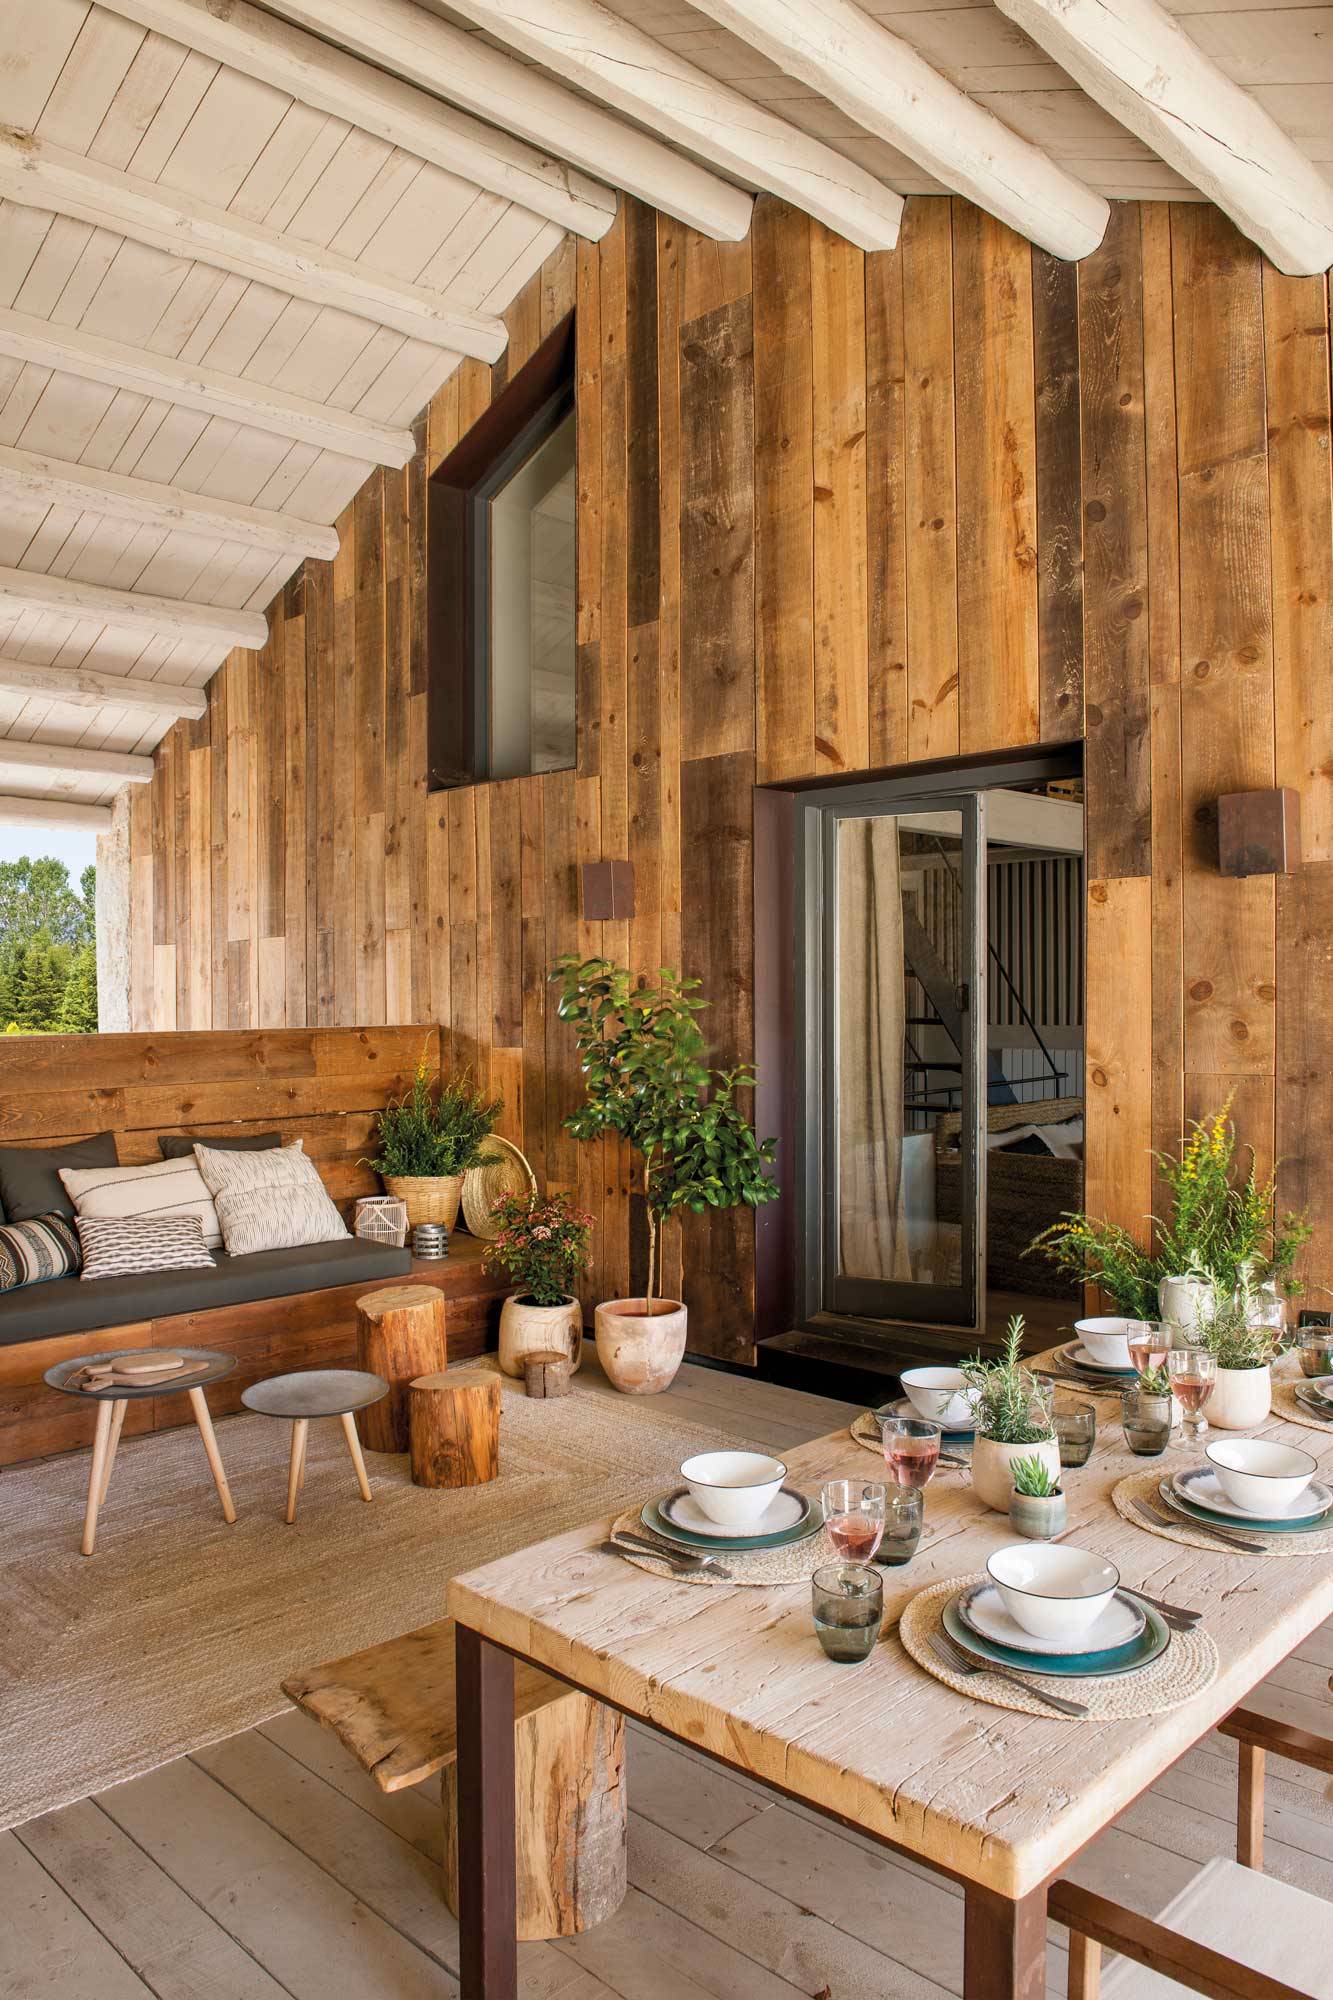 Terraza de una casa de madera con estilo rústico.